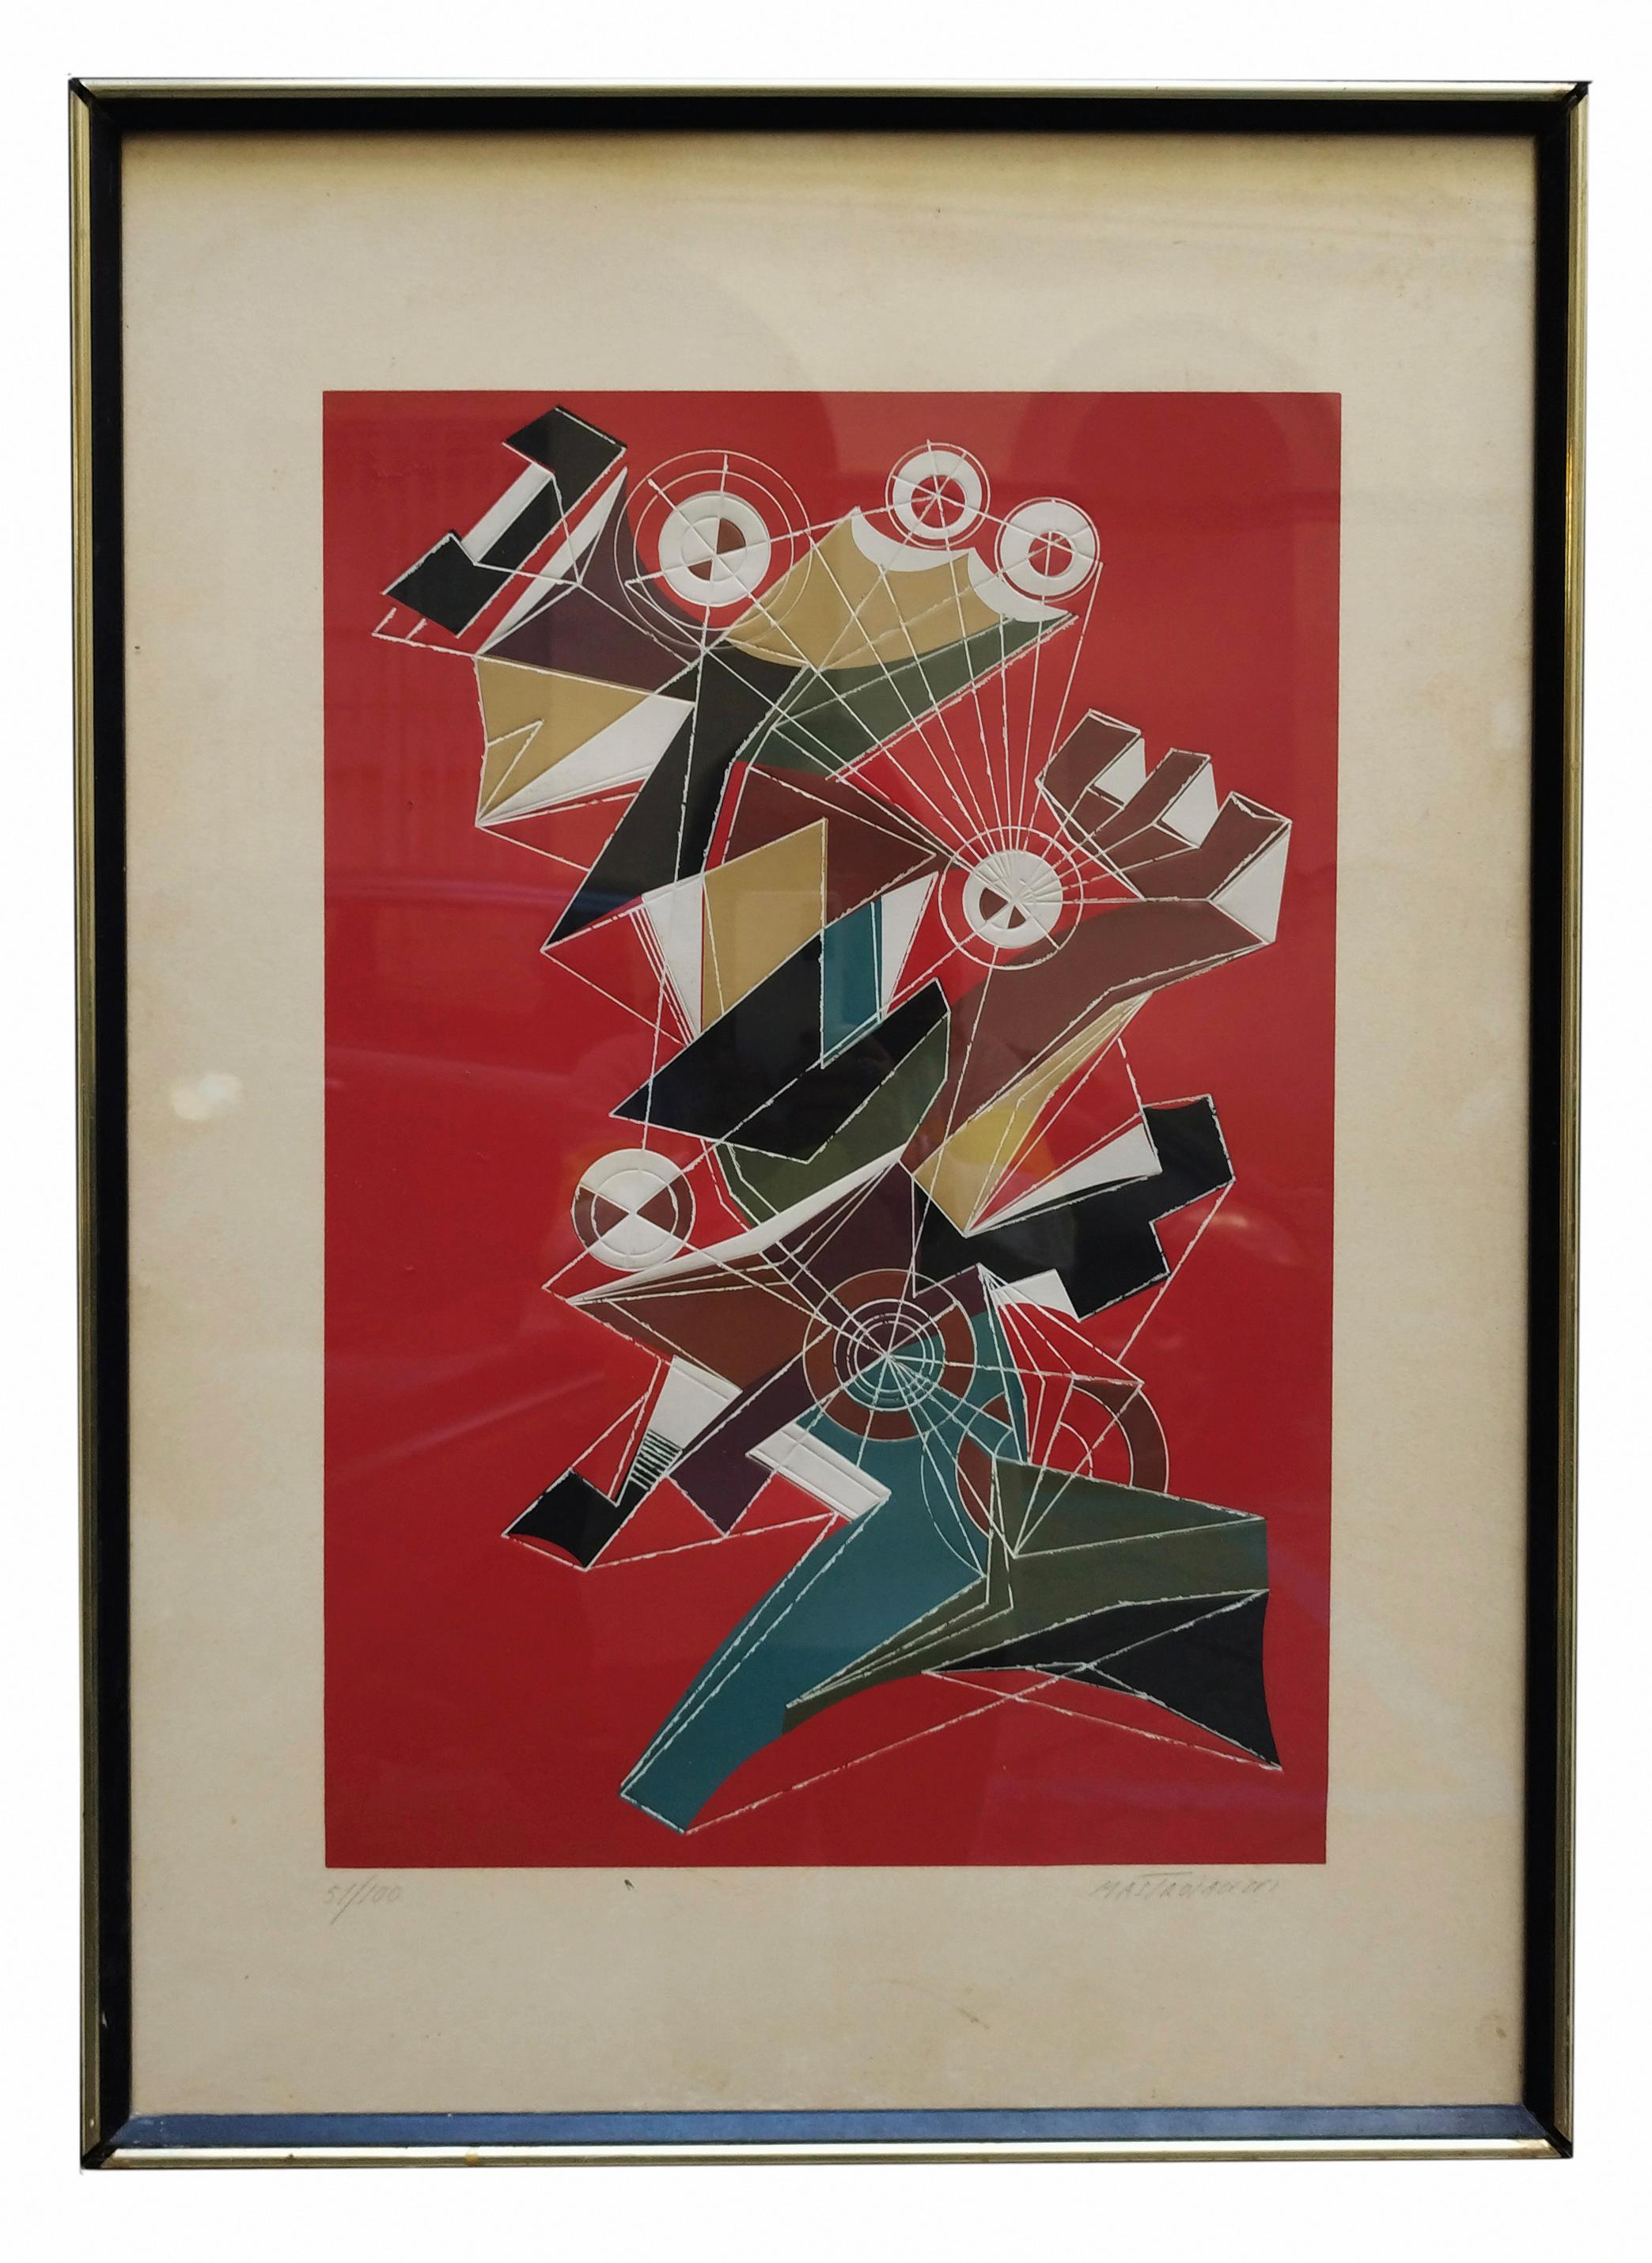 Sérigraphie d'Umberto Mastroianni  avec cadre  en couleurs mélangées. Signé à la main par l'artiste dans le coin inférieur droit au crayon. Numéroté 51/100 au crayon dans le coin inférieur gauche. 1970s
Bon état.
